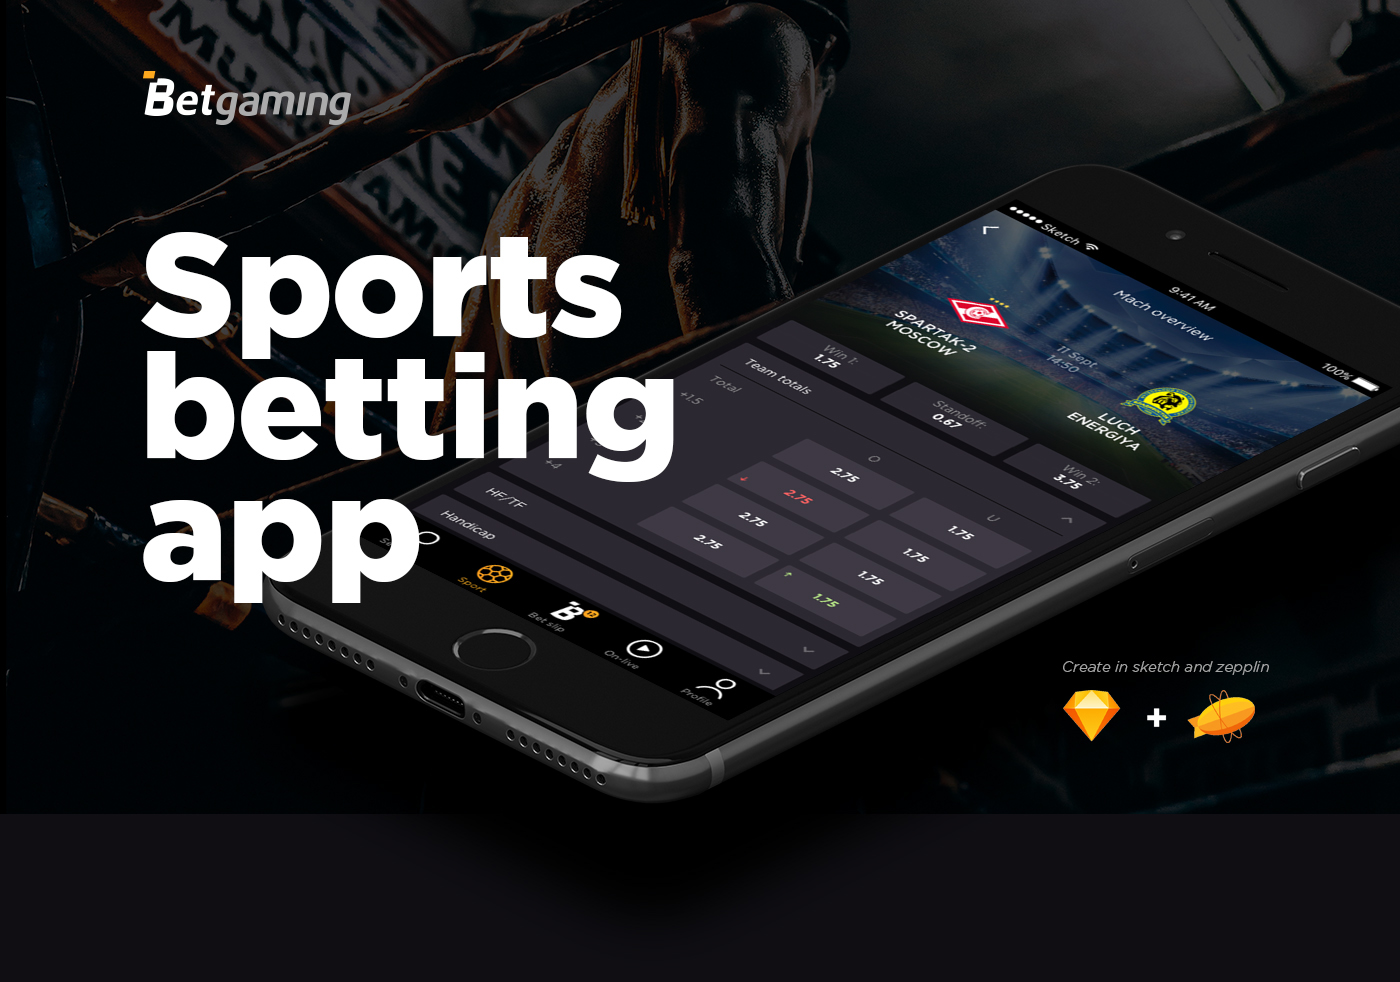 1xbet online betting app download